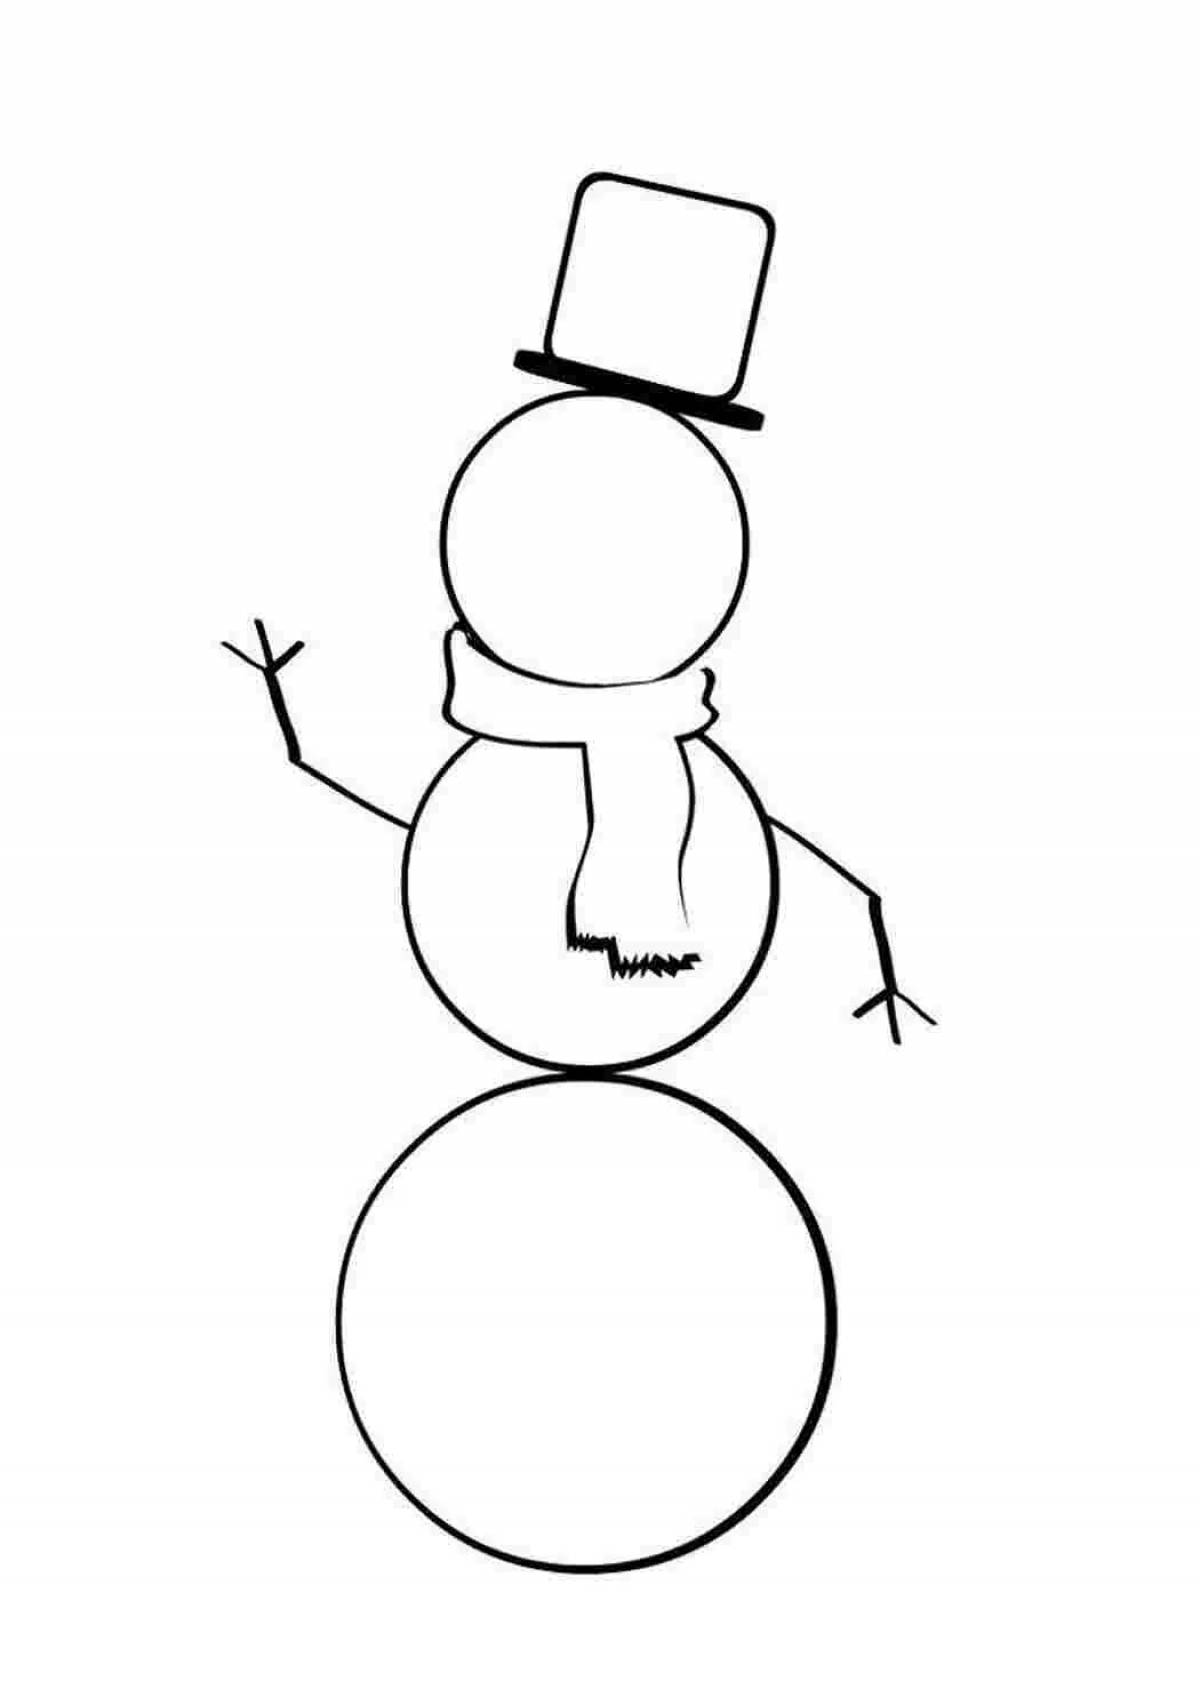 Noseless snowman #9